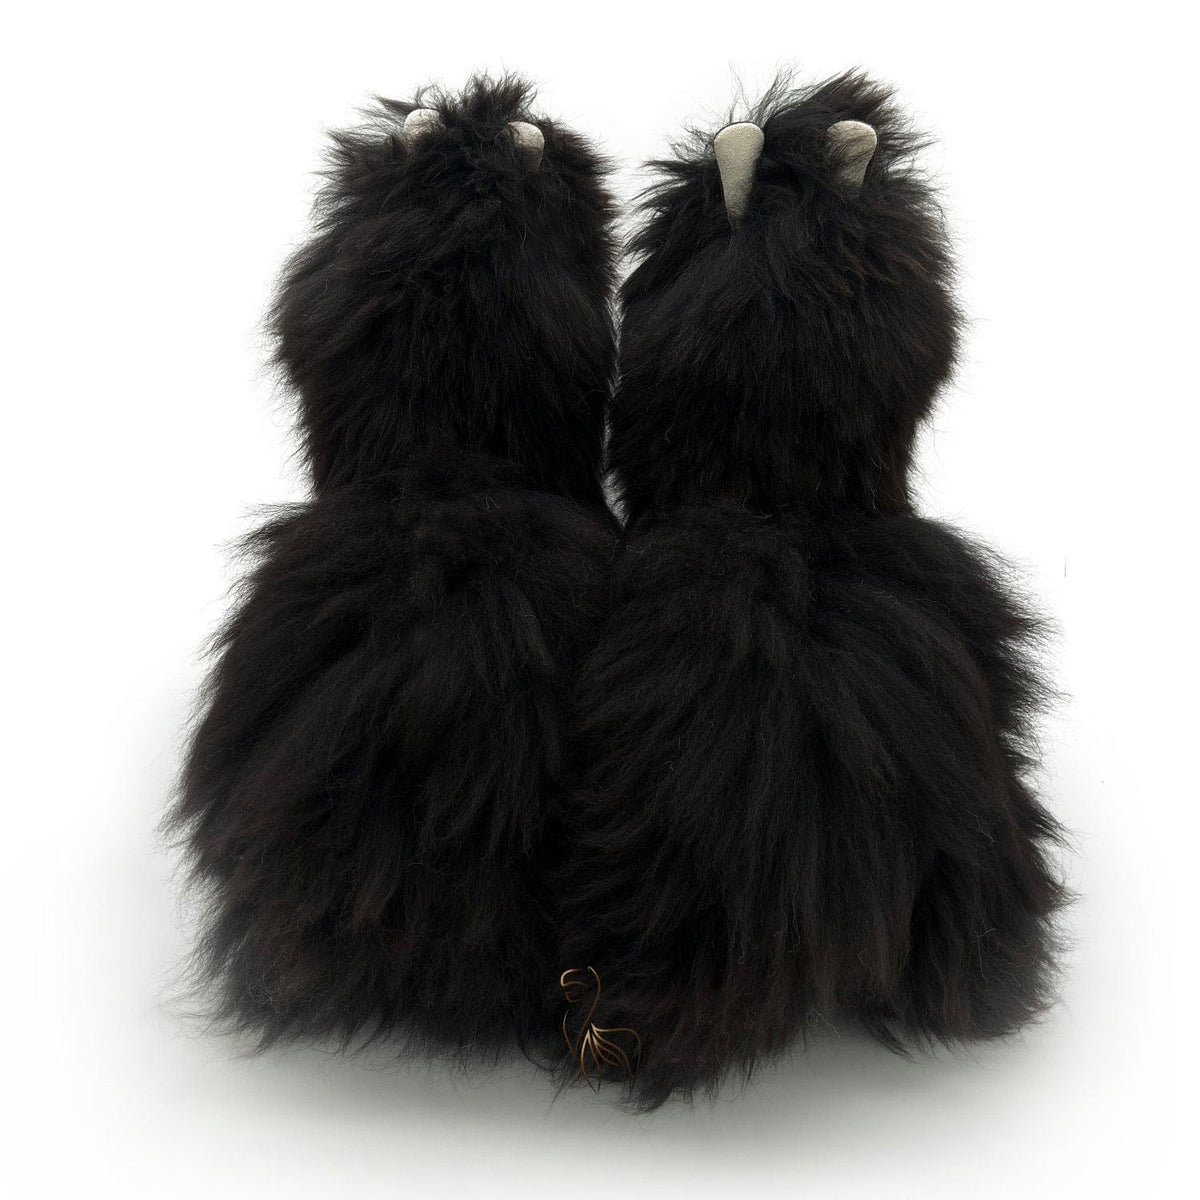 Fluff Monster - Zwarte Panter - Groot alpacaspeelgoed (50 cm)